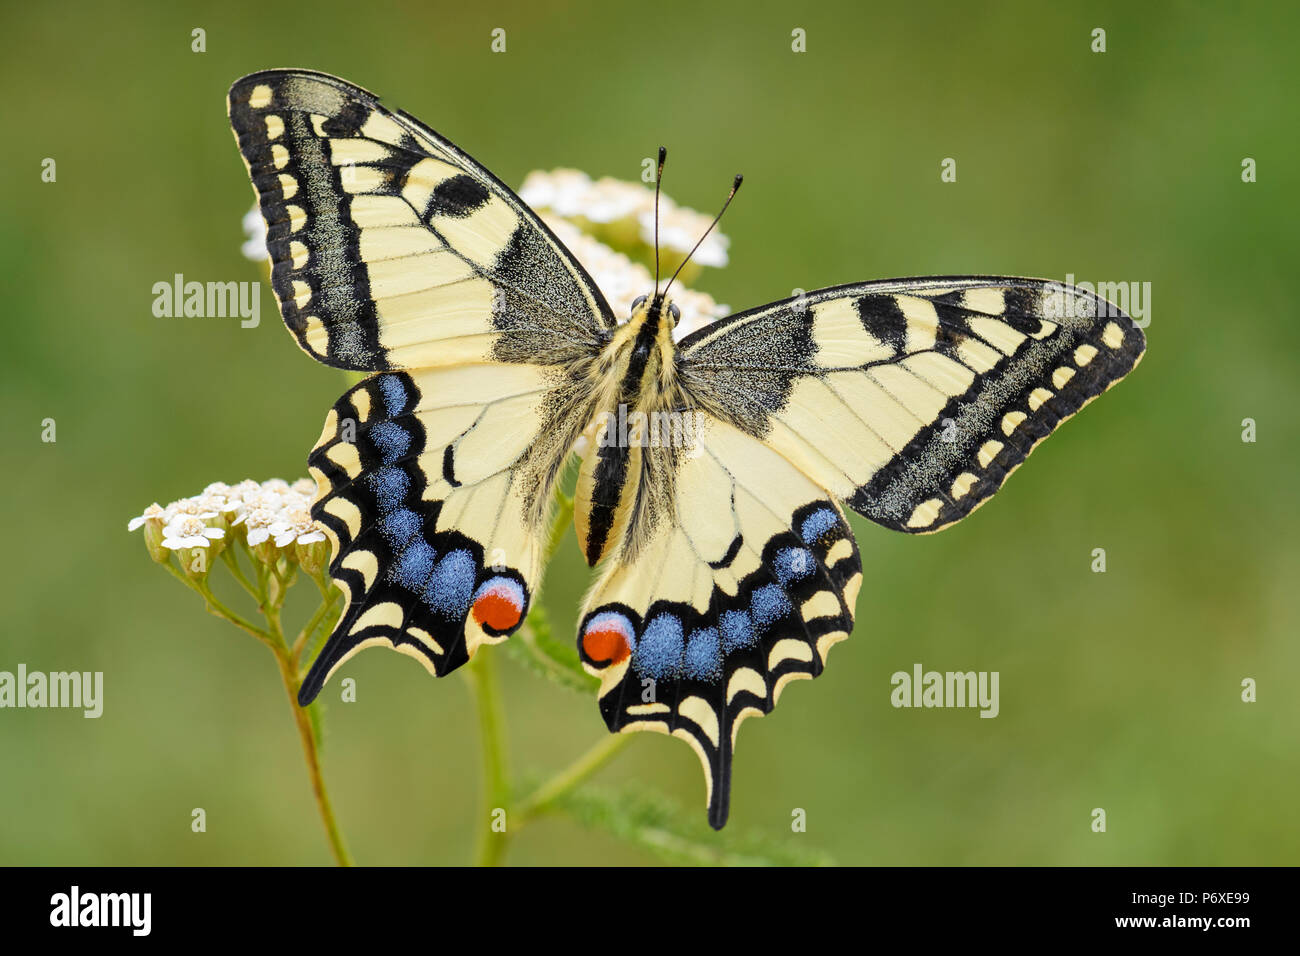 Ancien monde Swallowtail butterfly - Papilio machaon, beau papillon emblématique de couleur de prés et prairies européennes. Banque D'Images